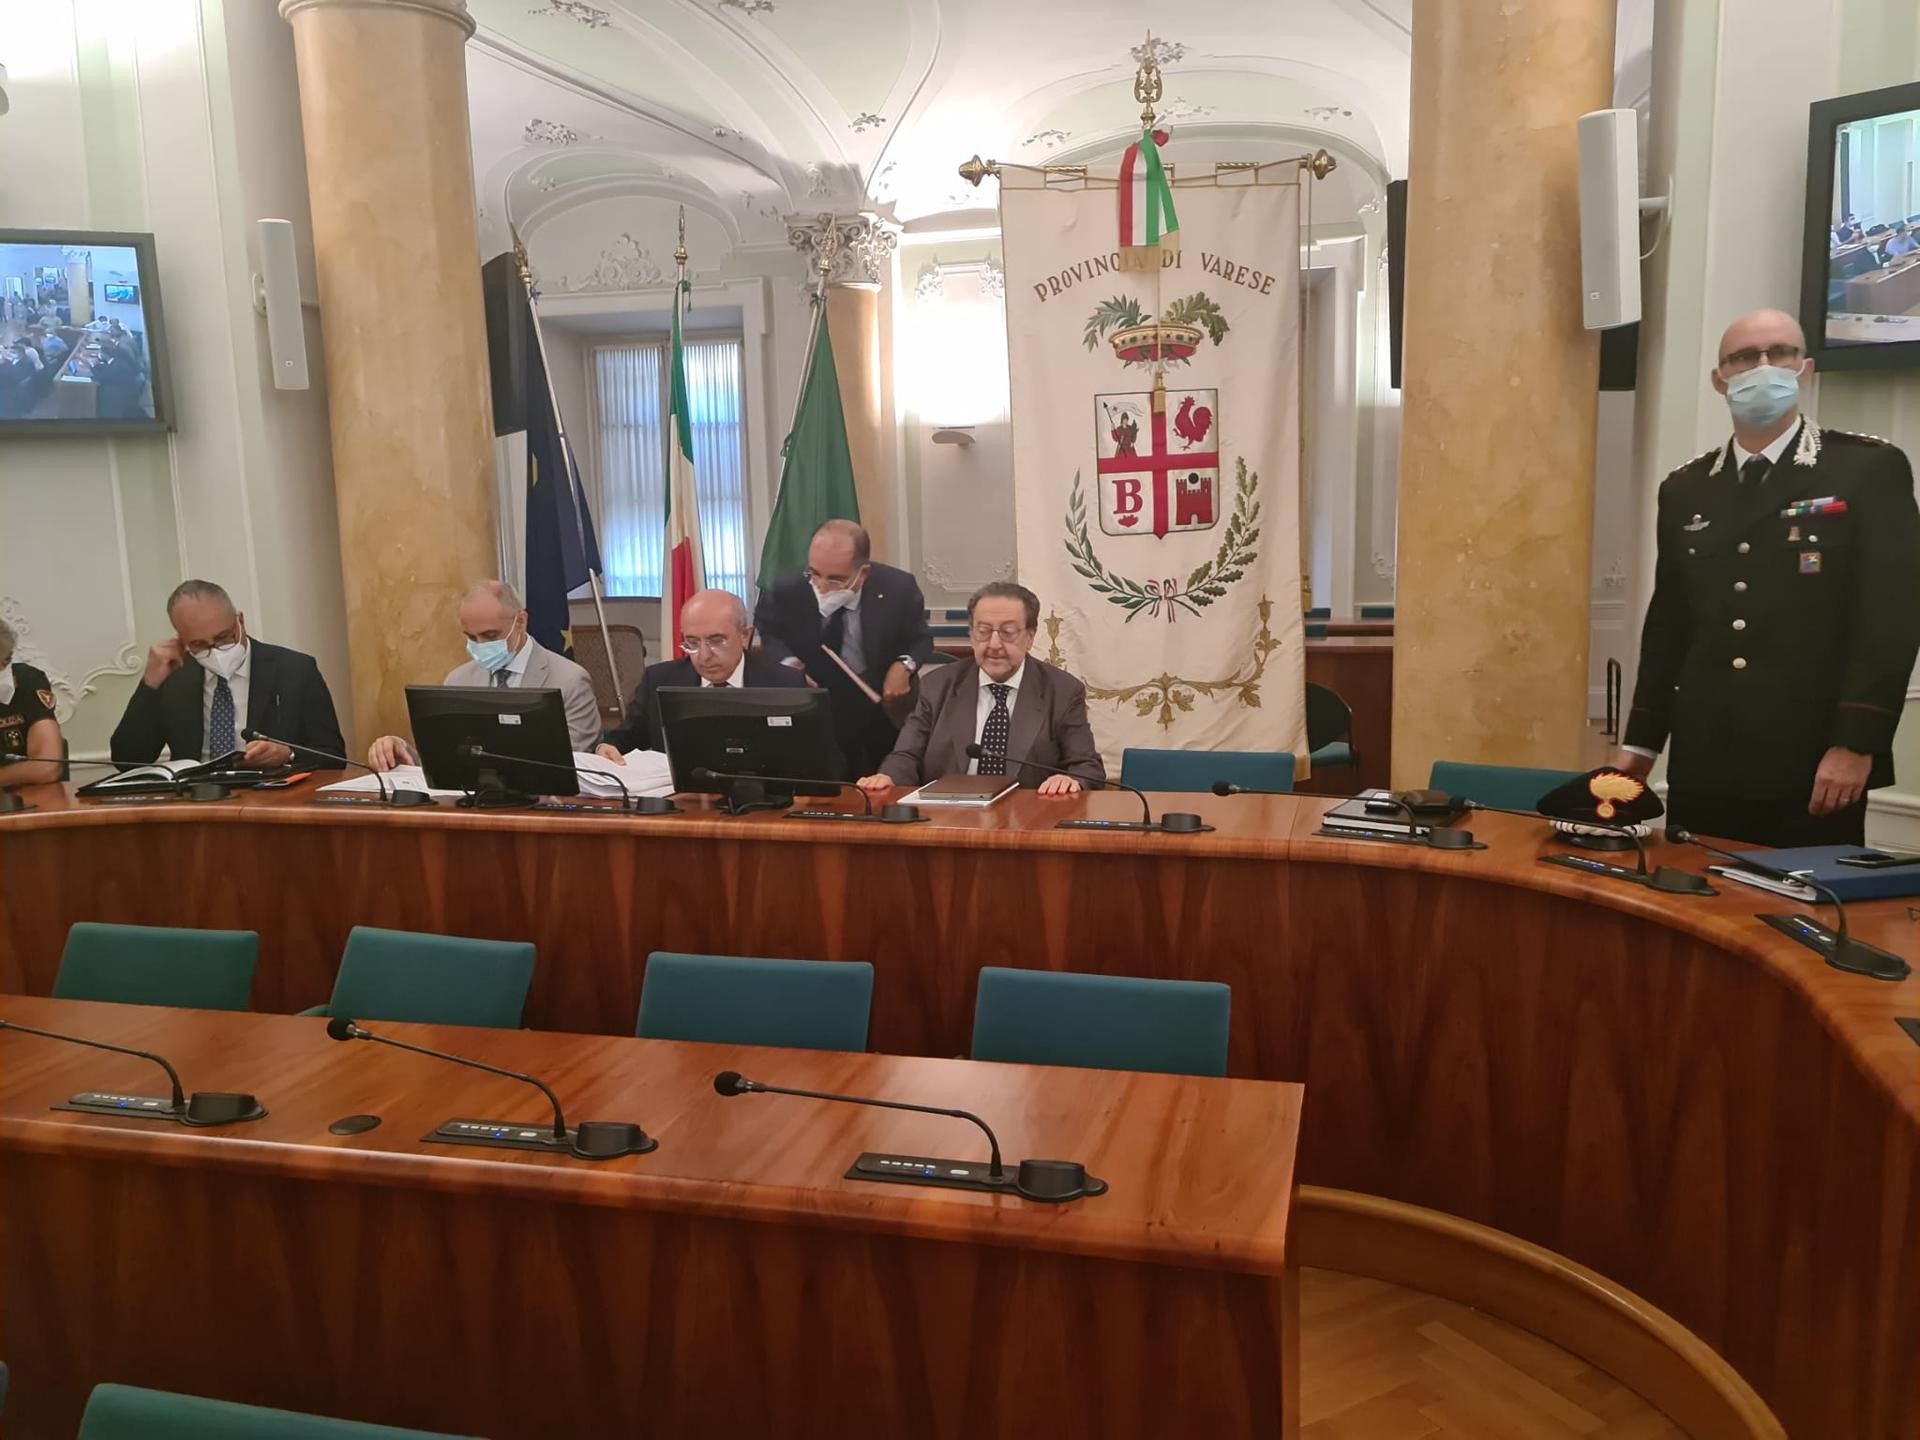 Elezioni Provincia Varese, 2 candidati